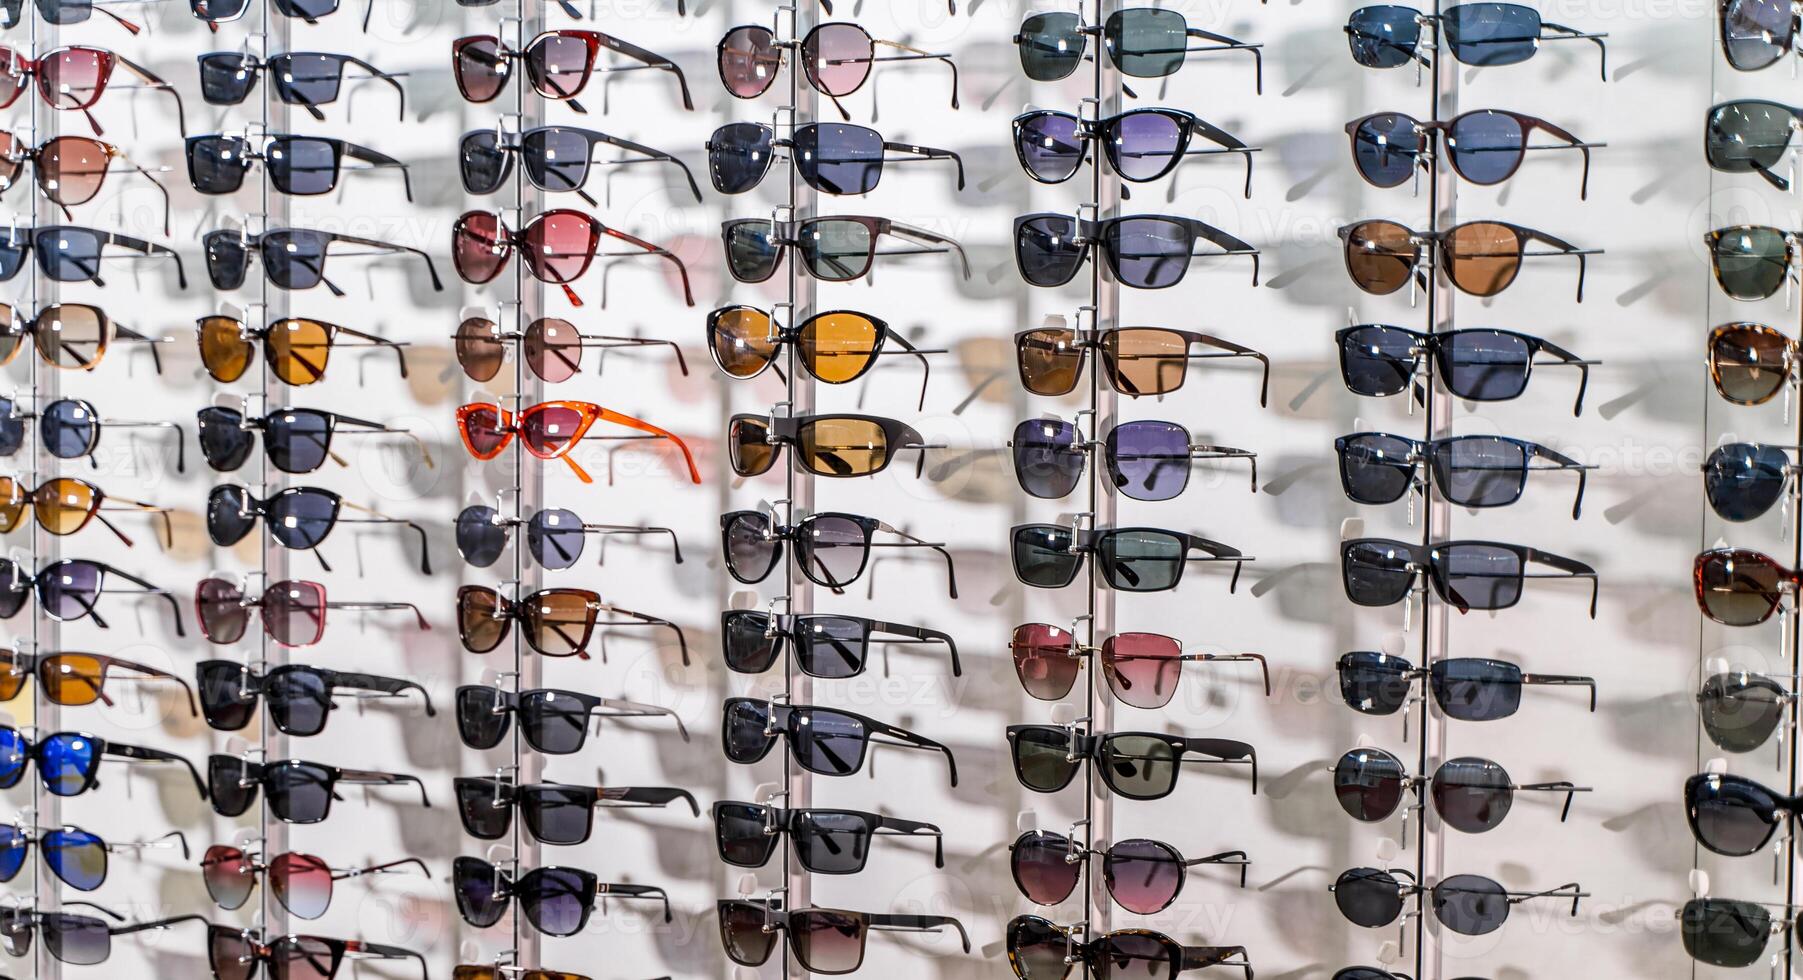 Ventes grille de des lunettes de soleil. une coloré afficher de des lunettes de soleil pour vente. fermer. photo